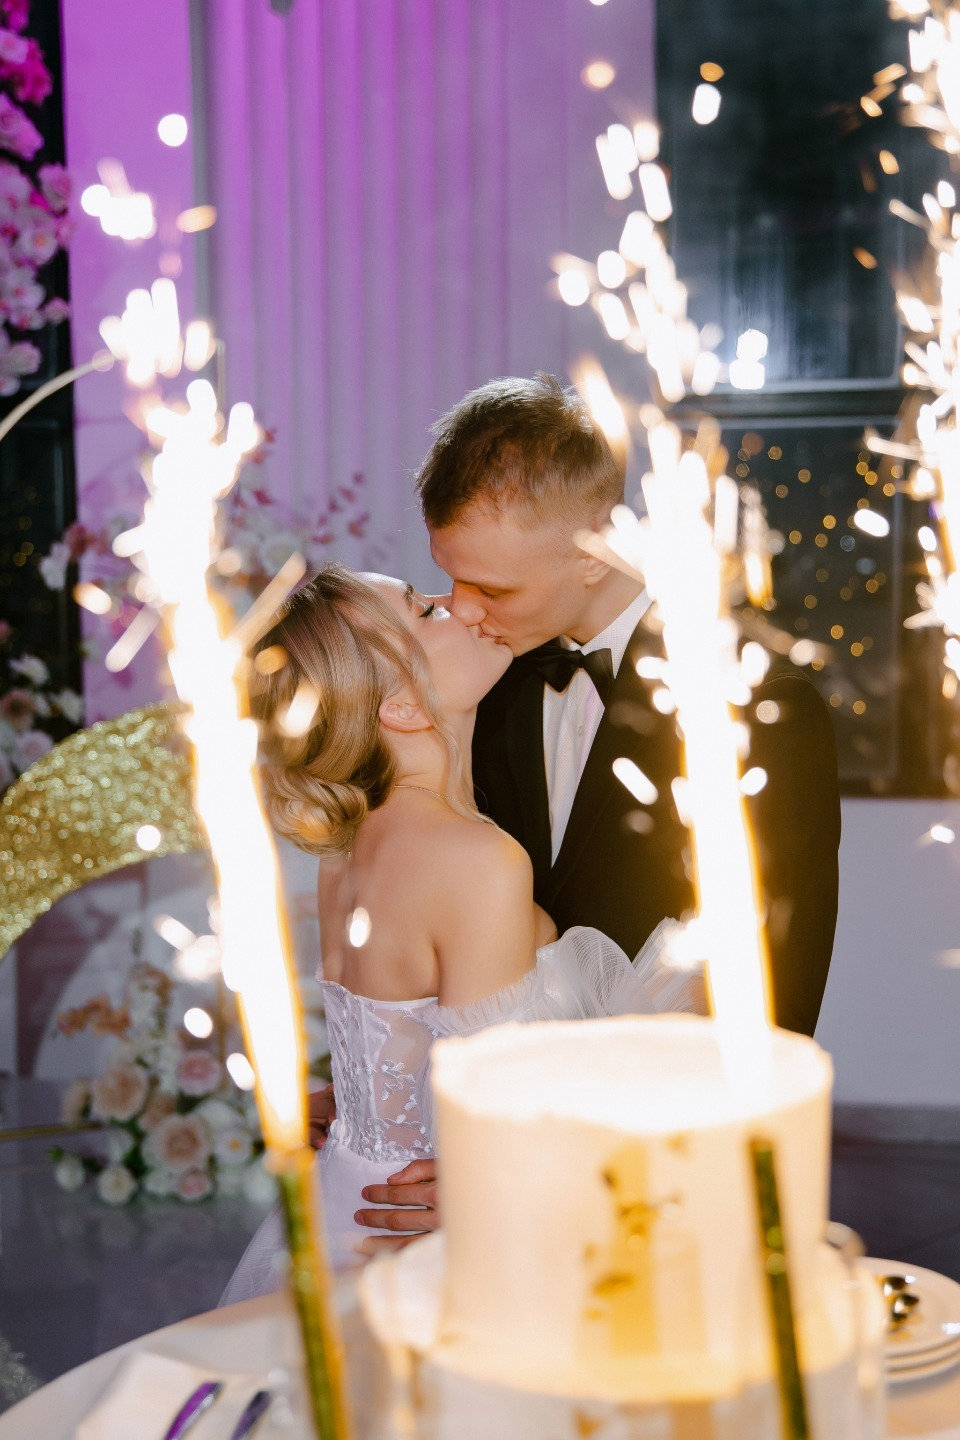 Свет любви: элегантная свадьба в светлой гамме